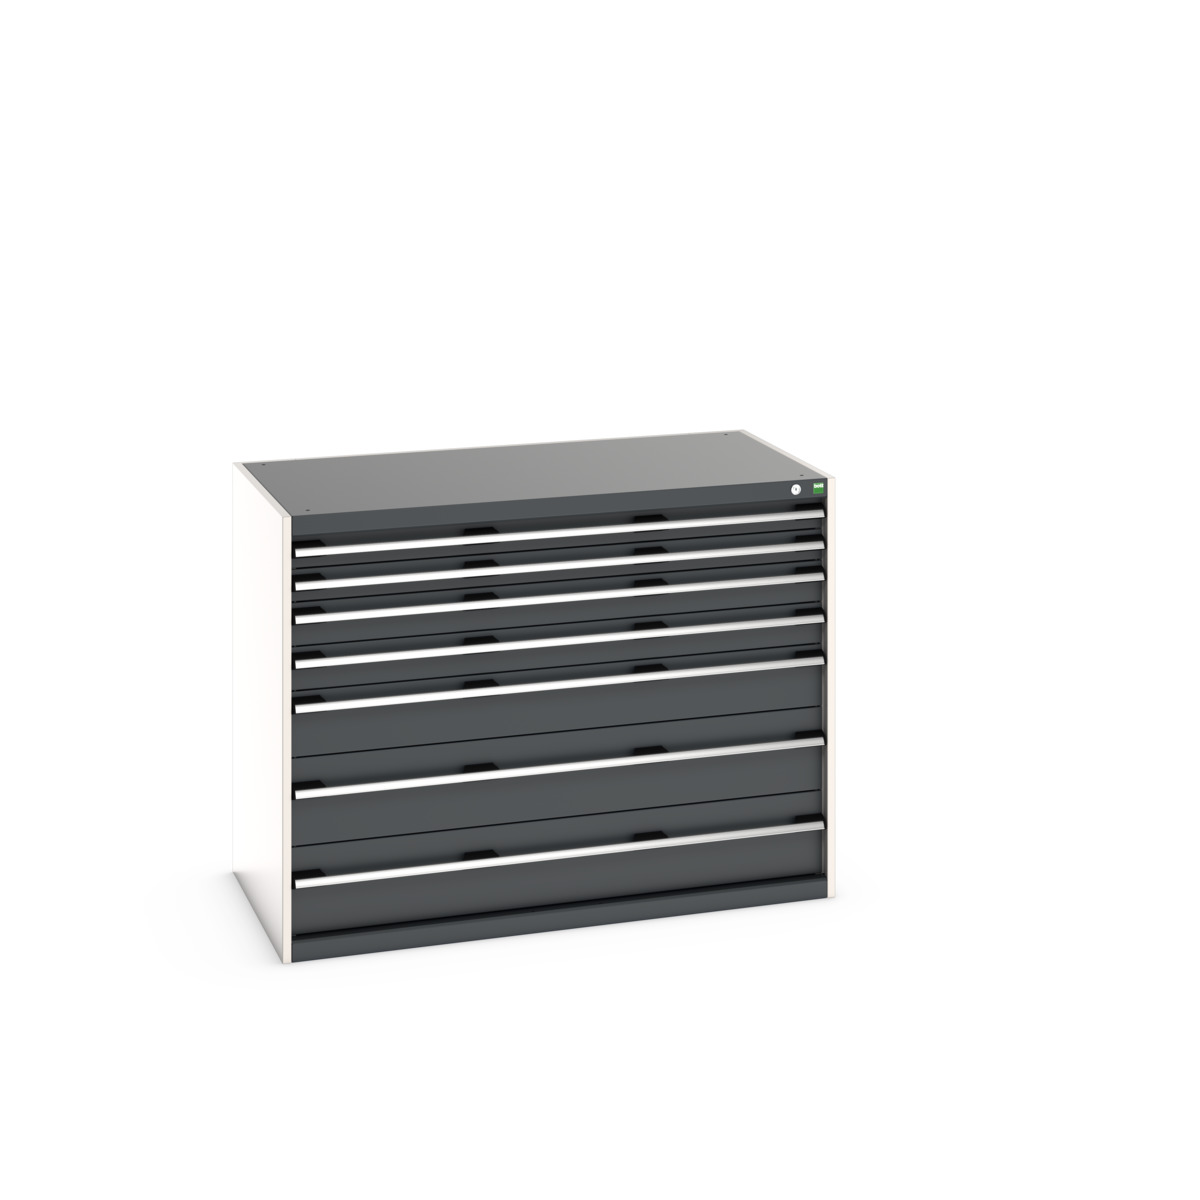 40030016.19V - cubio drawer cabinet